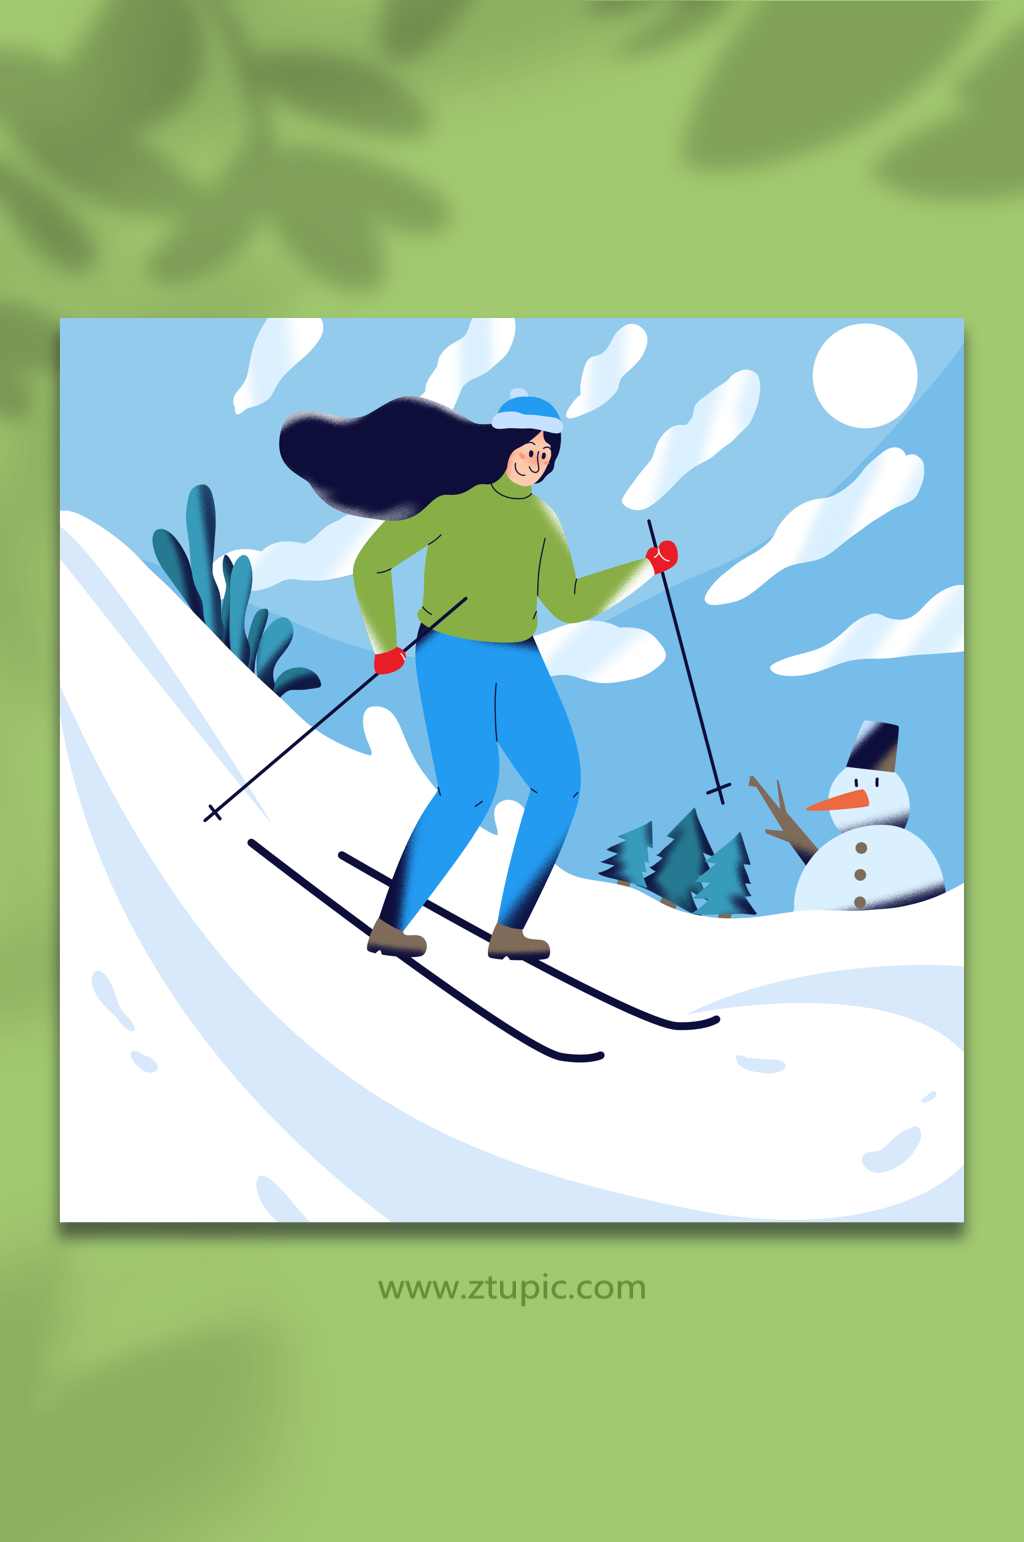 滑雪动漫图片大全女孩图片